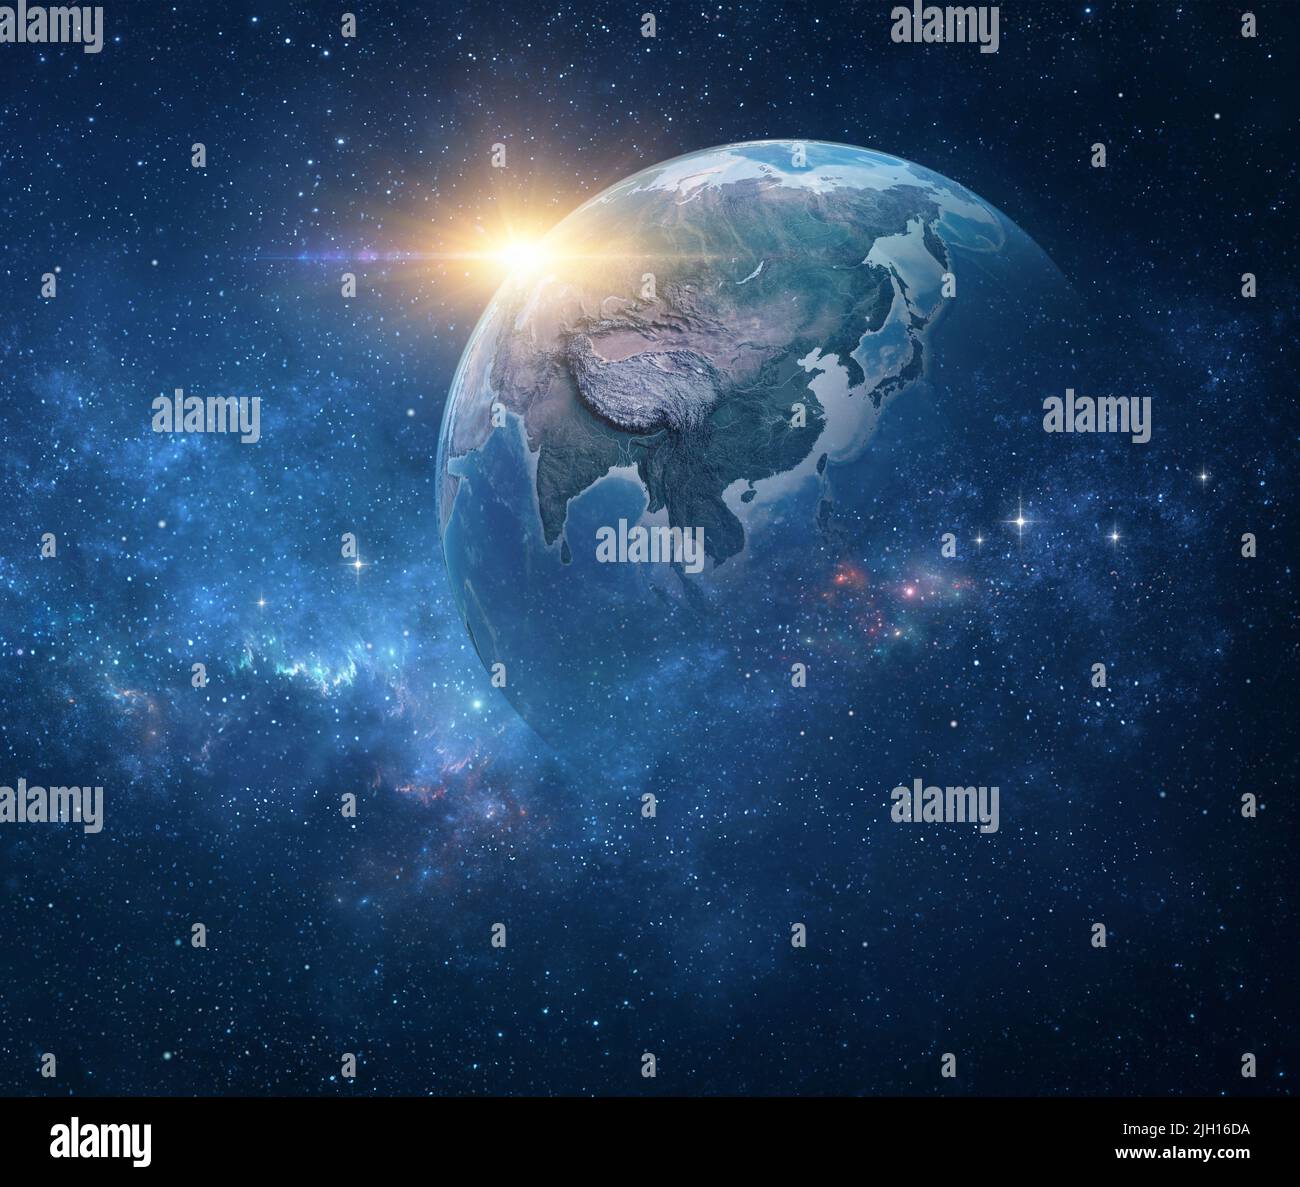 Pianeta Terra, visto dallo spazio focalizzato sull'Asia orientale. Globo terrestre nello spazio profondo, stelle che brillano e sole che si innalzano all'orizzonte - elementi della NASA Foto Stock